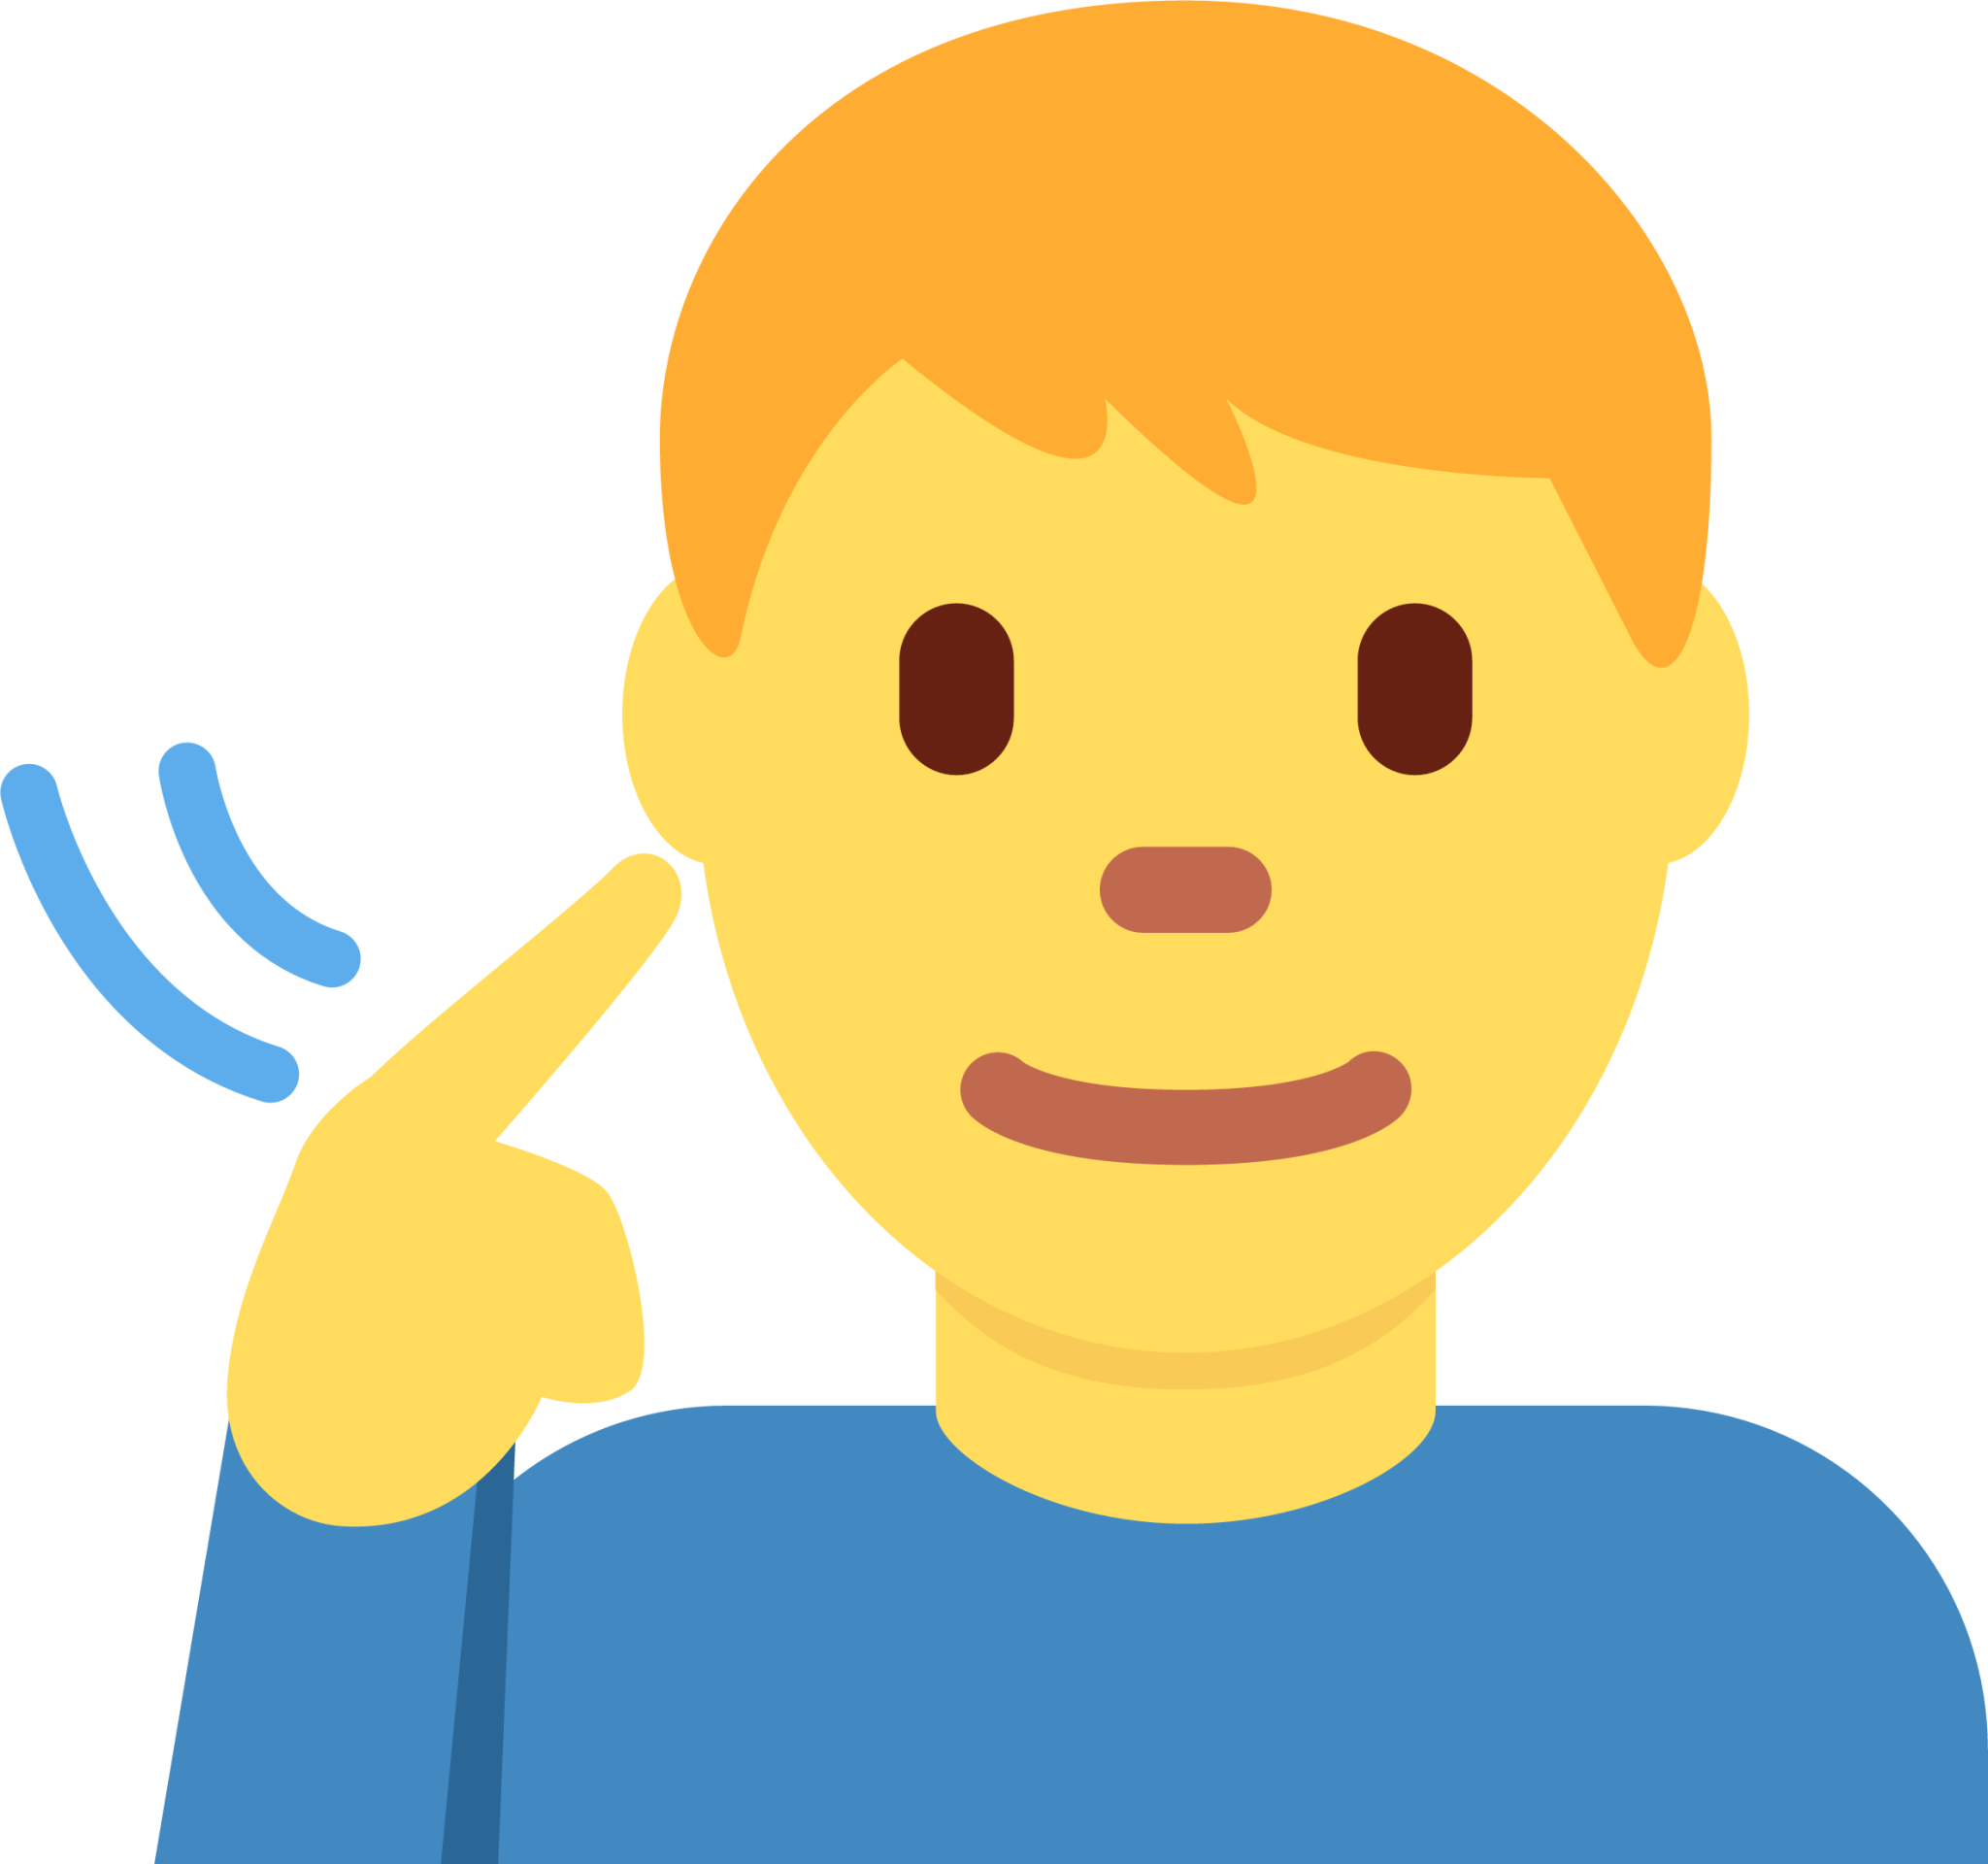 deaf man emoji